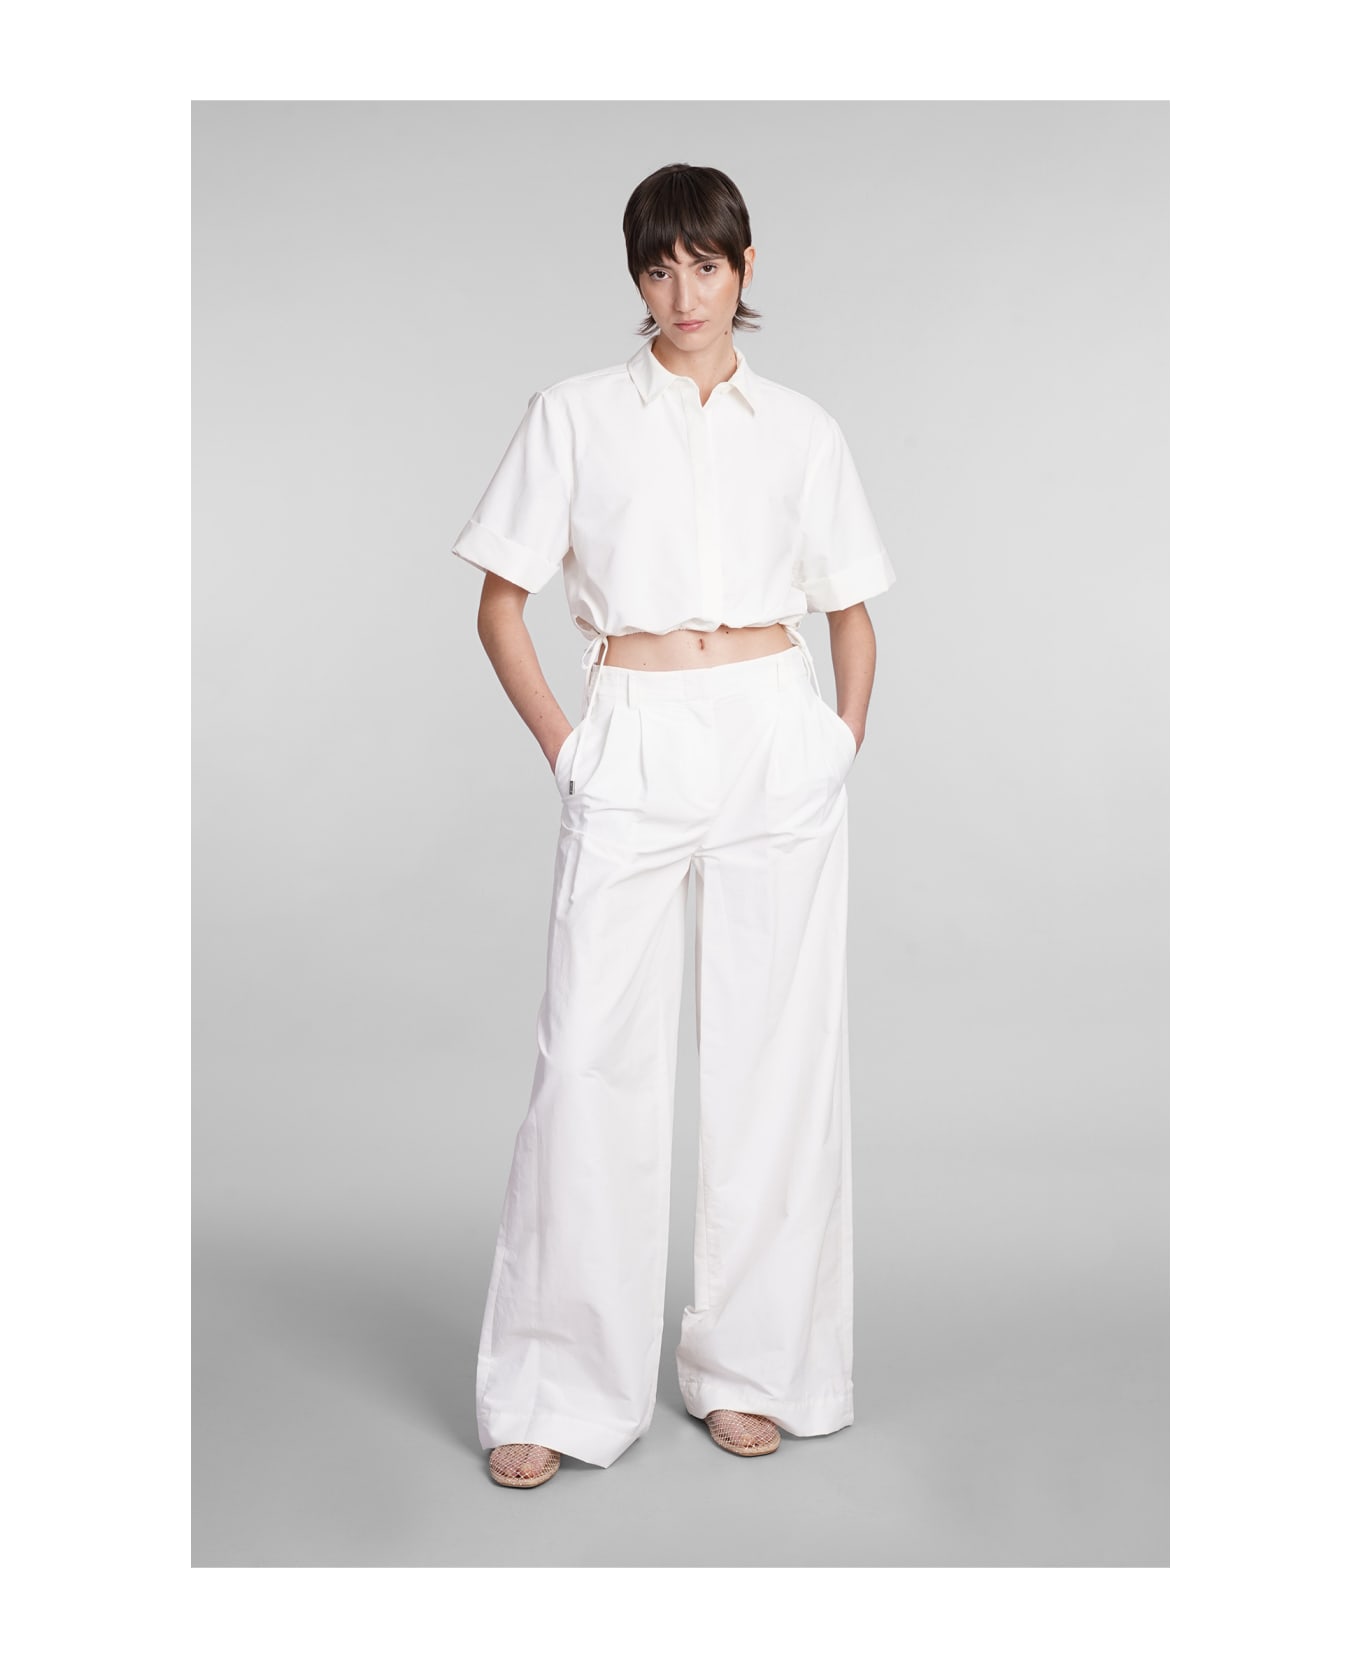 Simkhai Leroy Pants In White Cotton - white